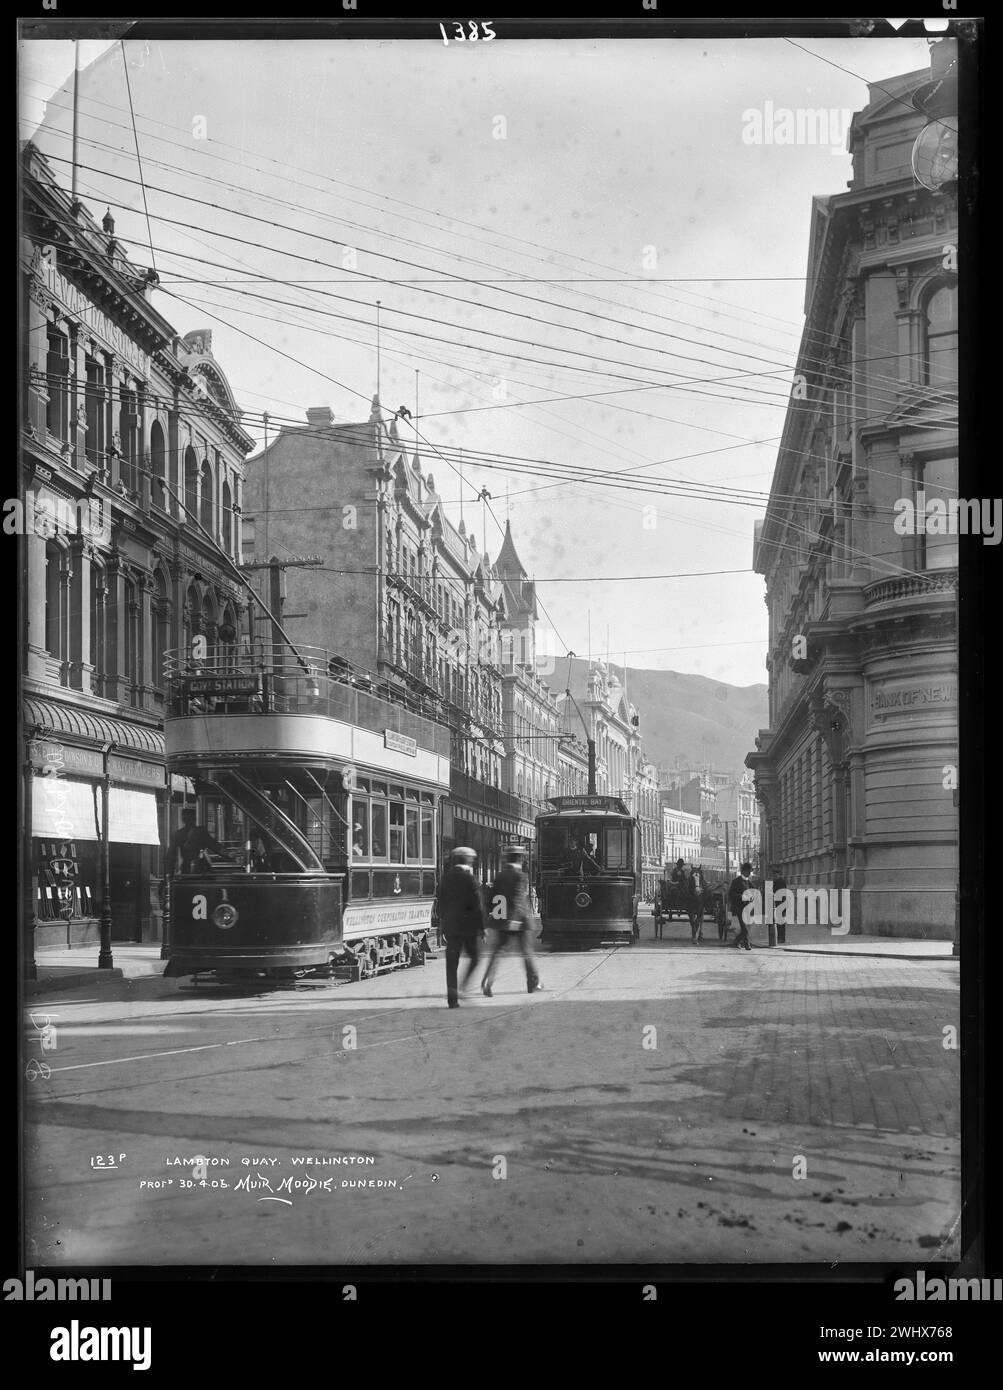 Lambton Quay, Wellington. Avec tramways en itinérance dans la rue. 1905. Scène photographique de rue vintage de Nouvelle-Zélande, début des années 1900 Banque D'Images